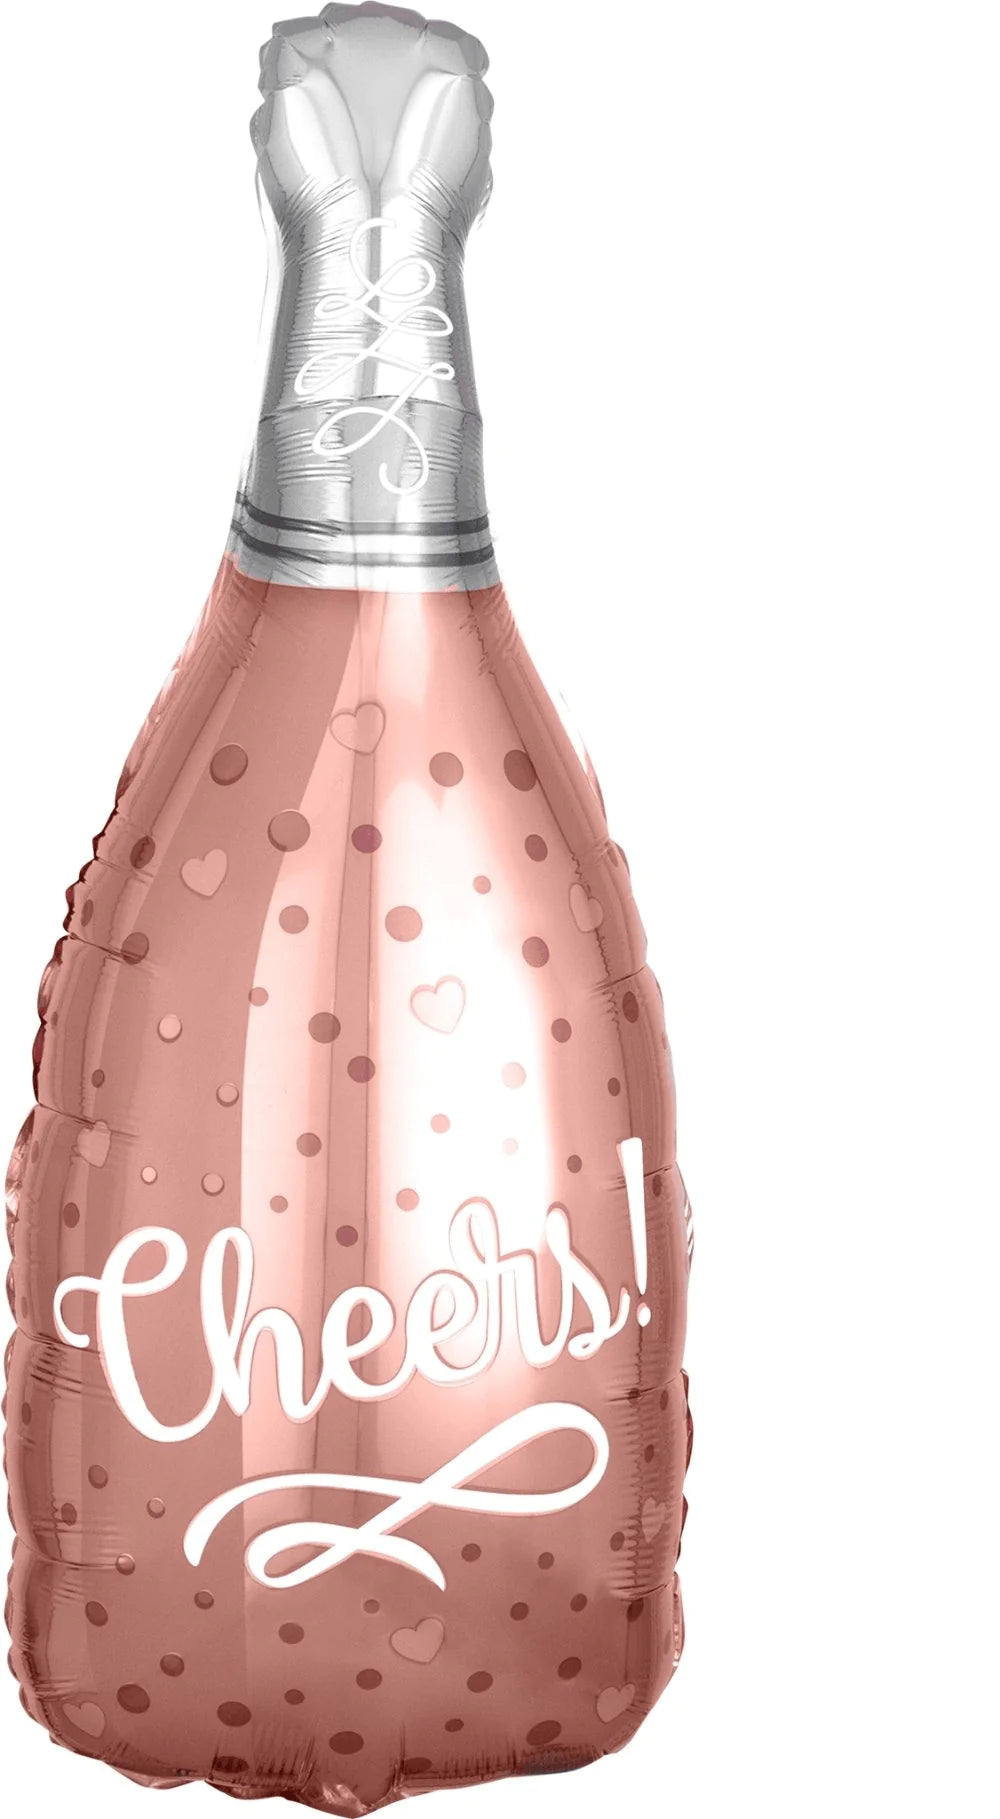 Super Shape - Champagne Bottle